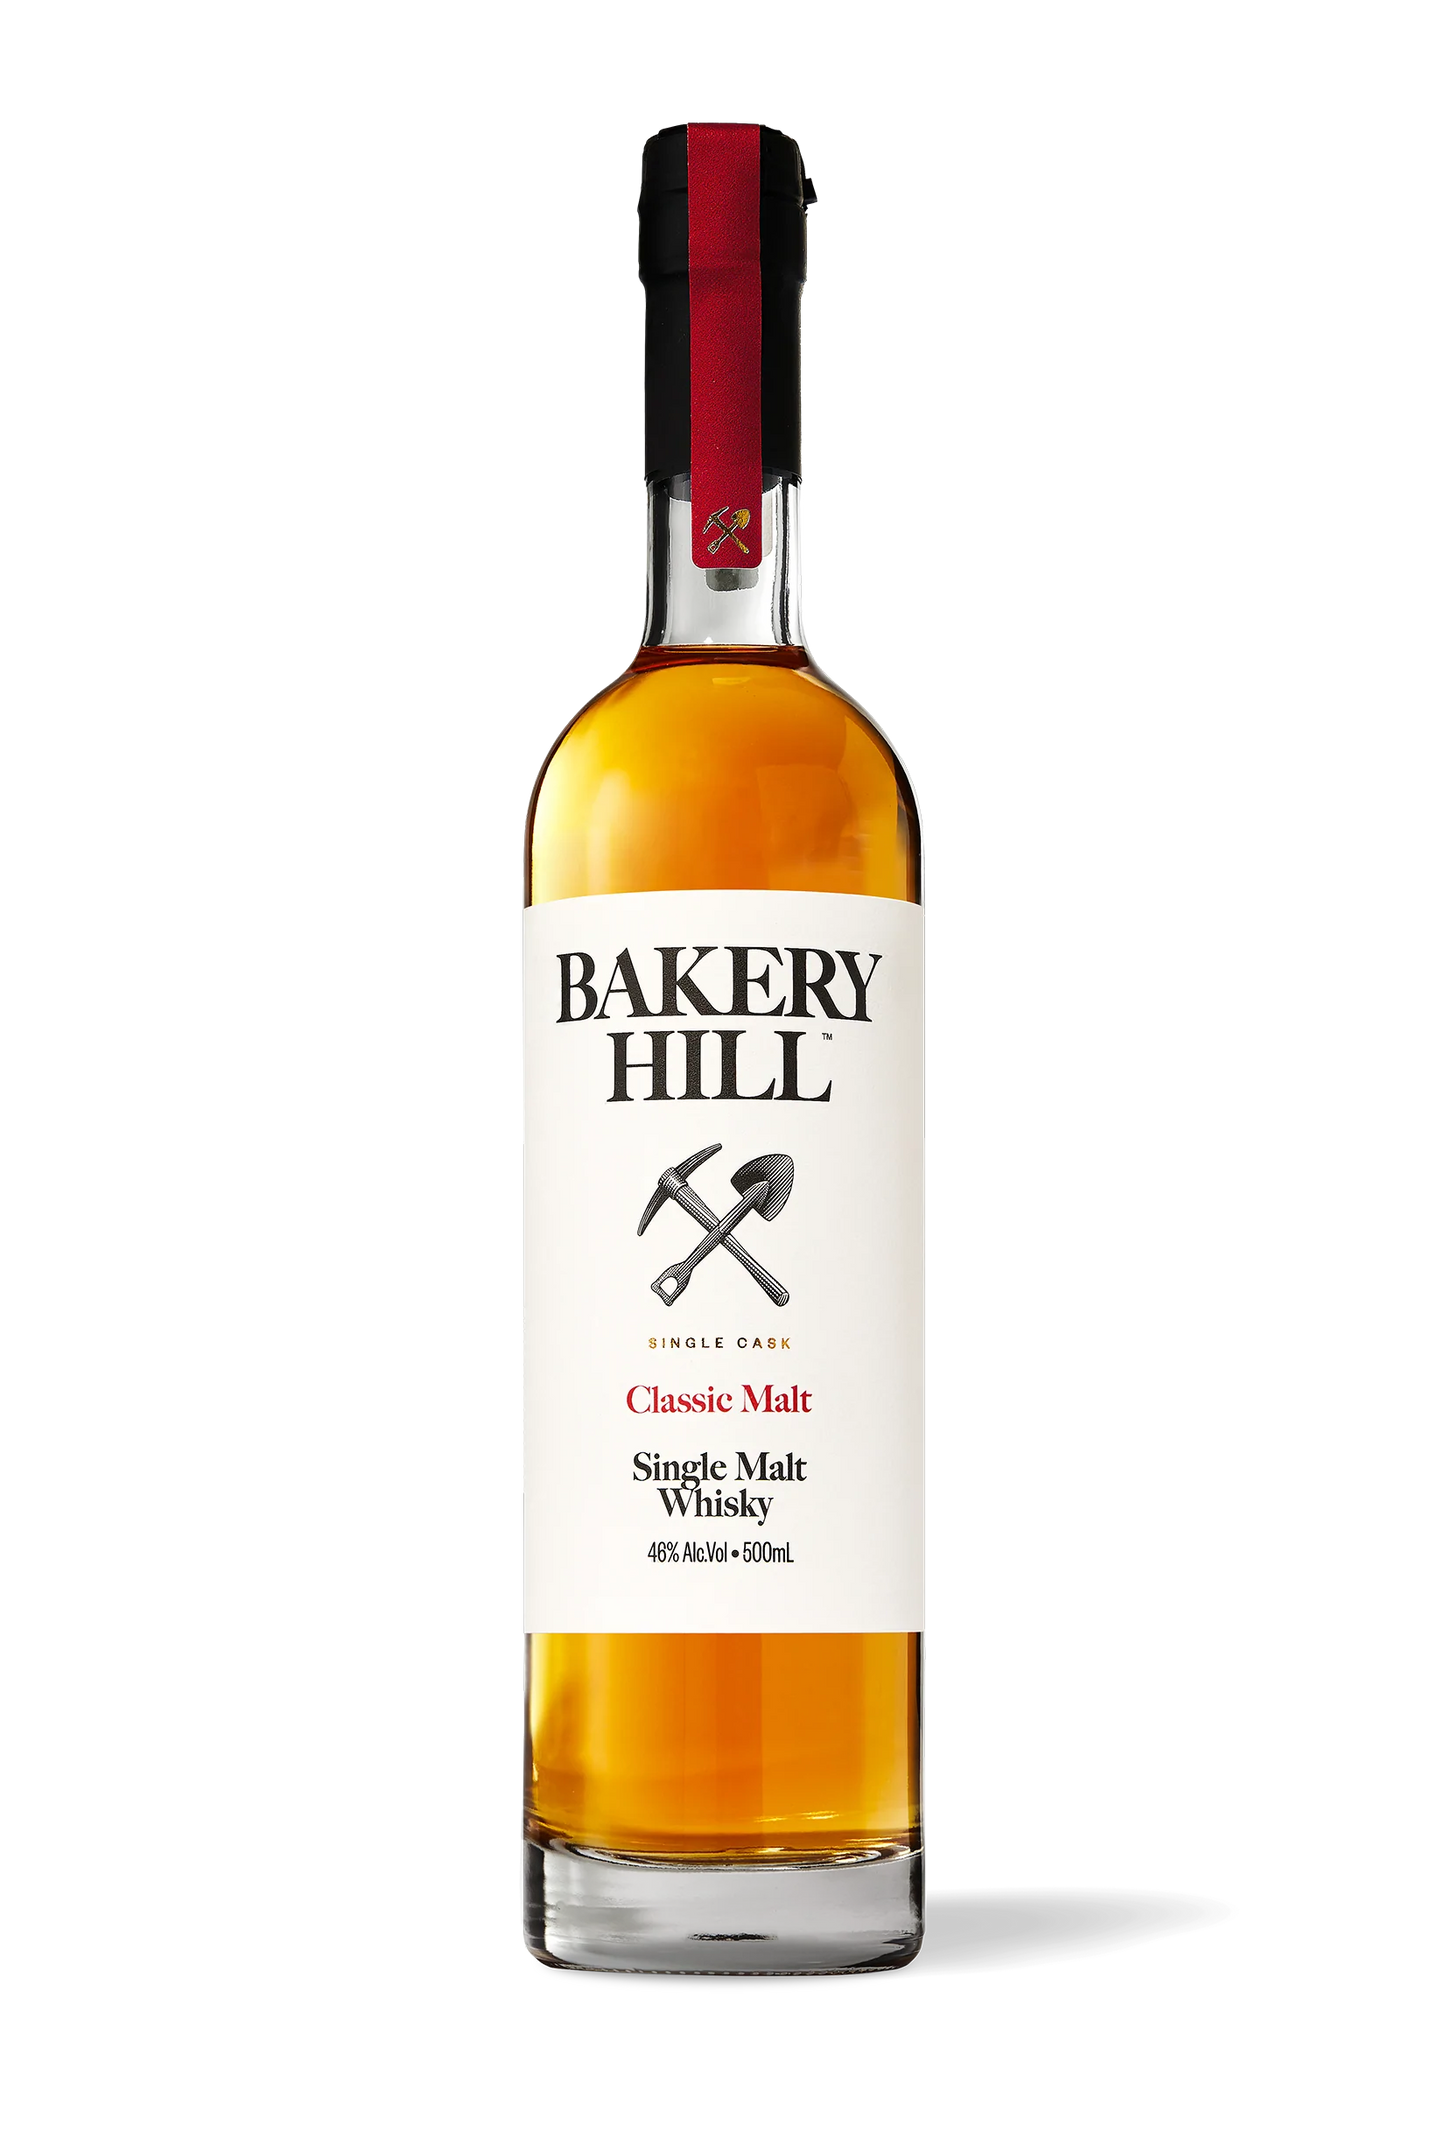 Bakery Hill Classic Malt Single Malt Whisky - Bottle (500ml)